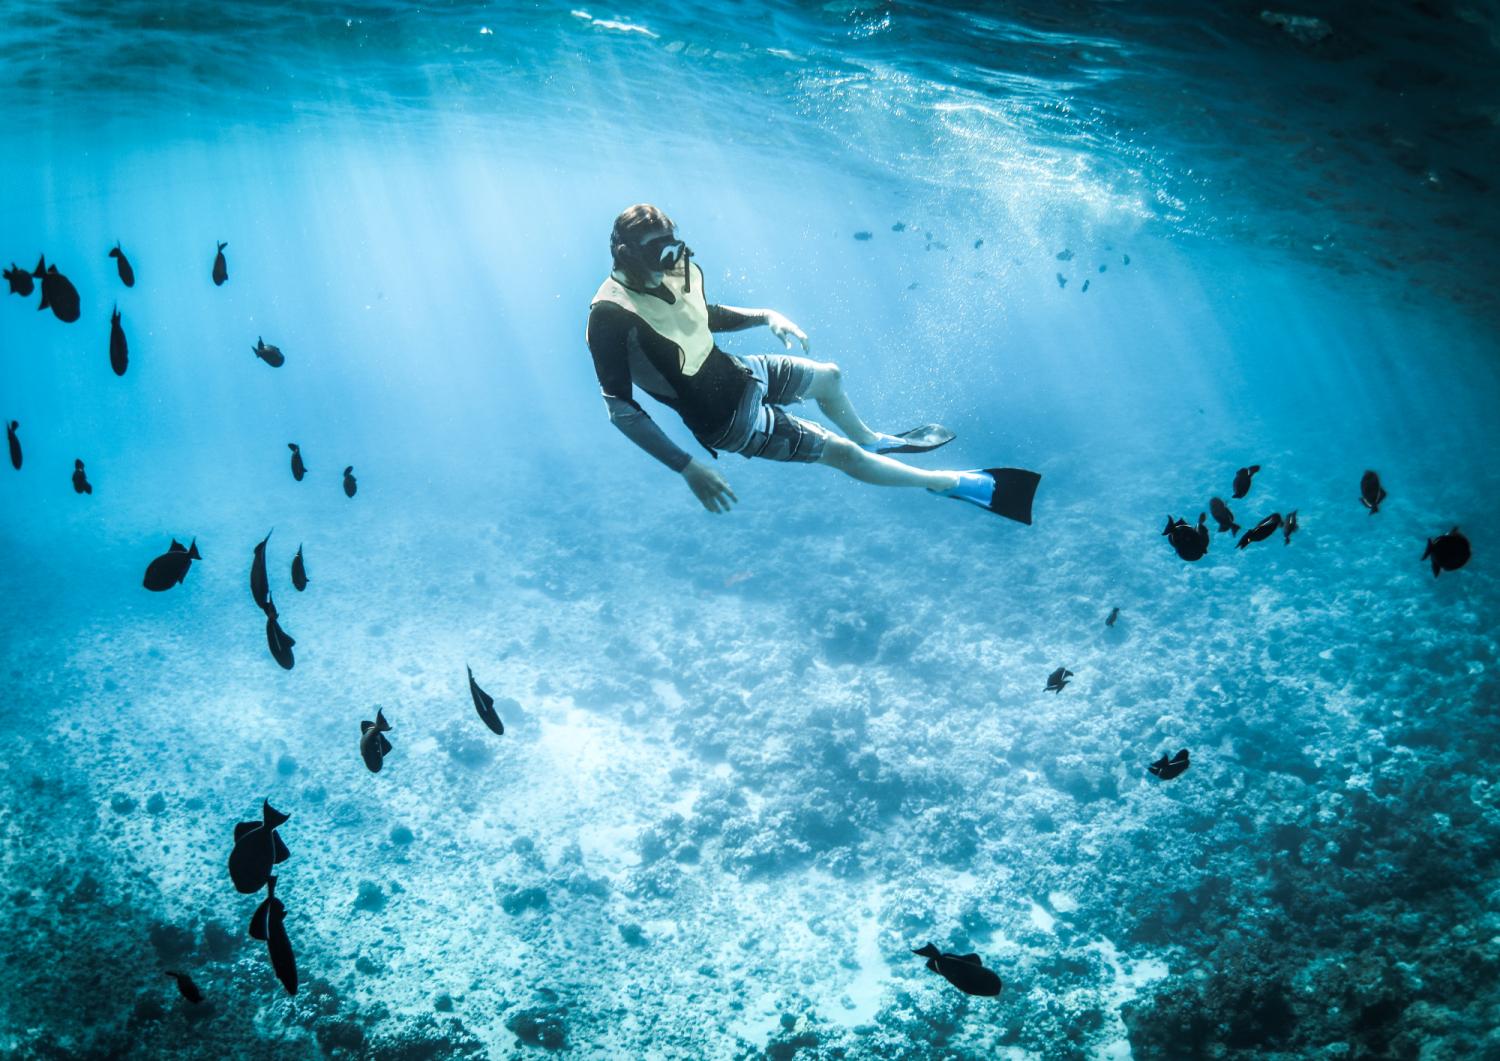 【Okinawa】沖繩恩納村青之洞窟潛水/浮潛體驗